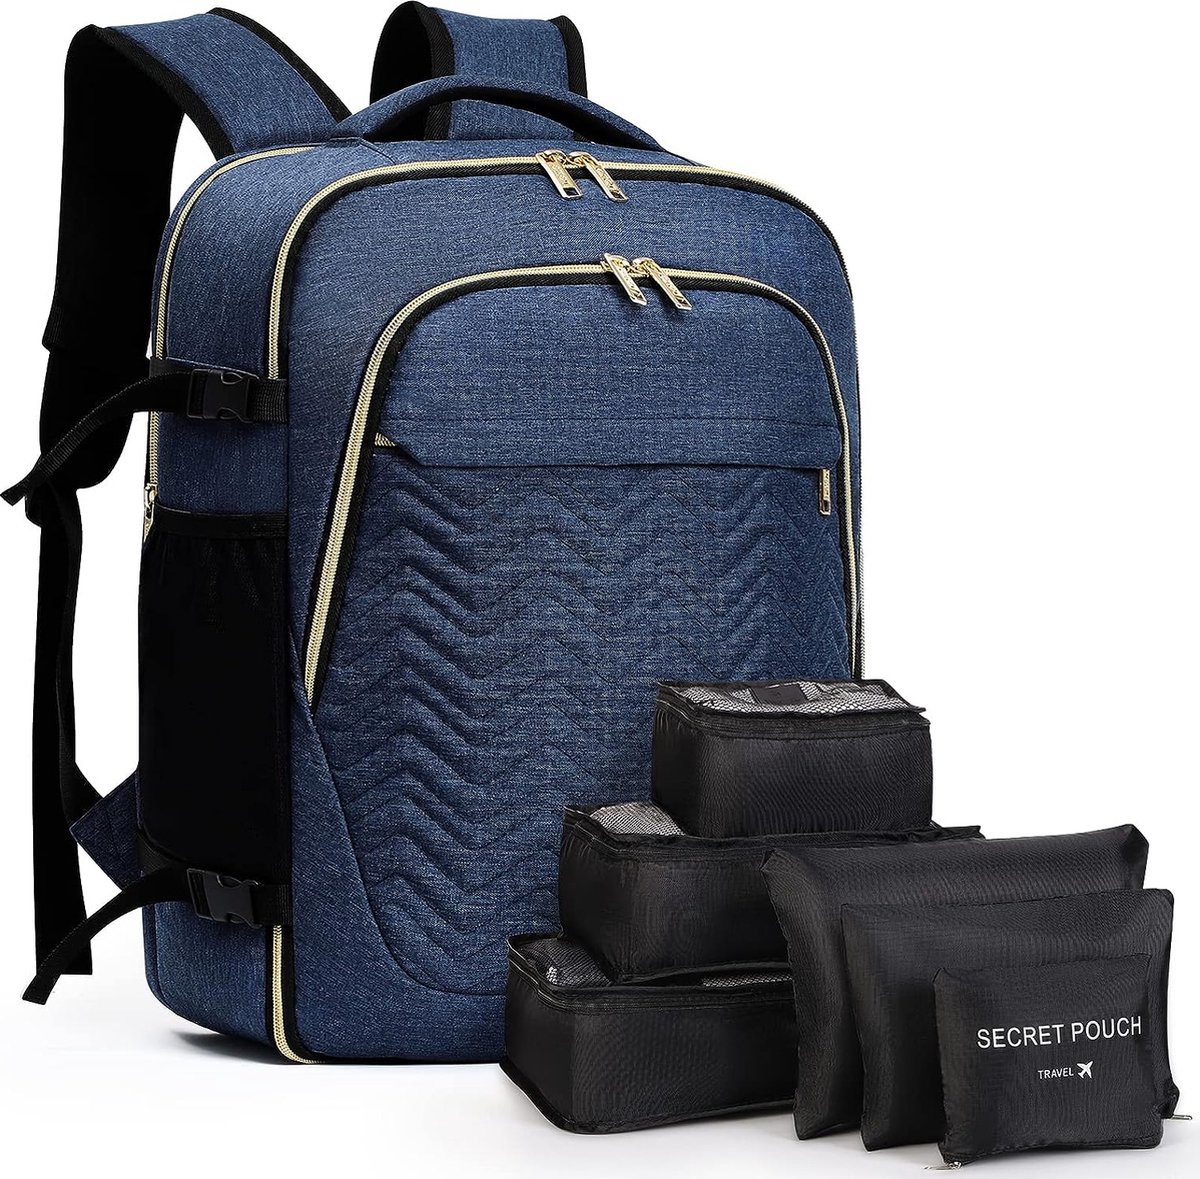 Grote rugzak, handbagage voor dames, 15,6 inch, laptoprugzak, reisrugzak, wandelrugzak met 6-delige kledingtassen voor vakantie, business, werk, reizen, blauw.